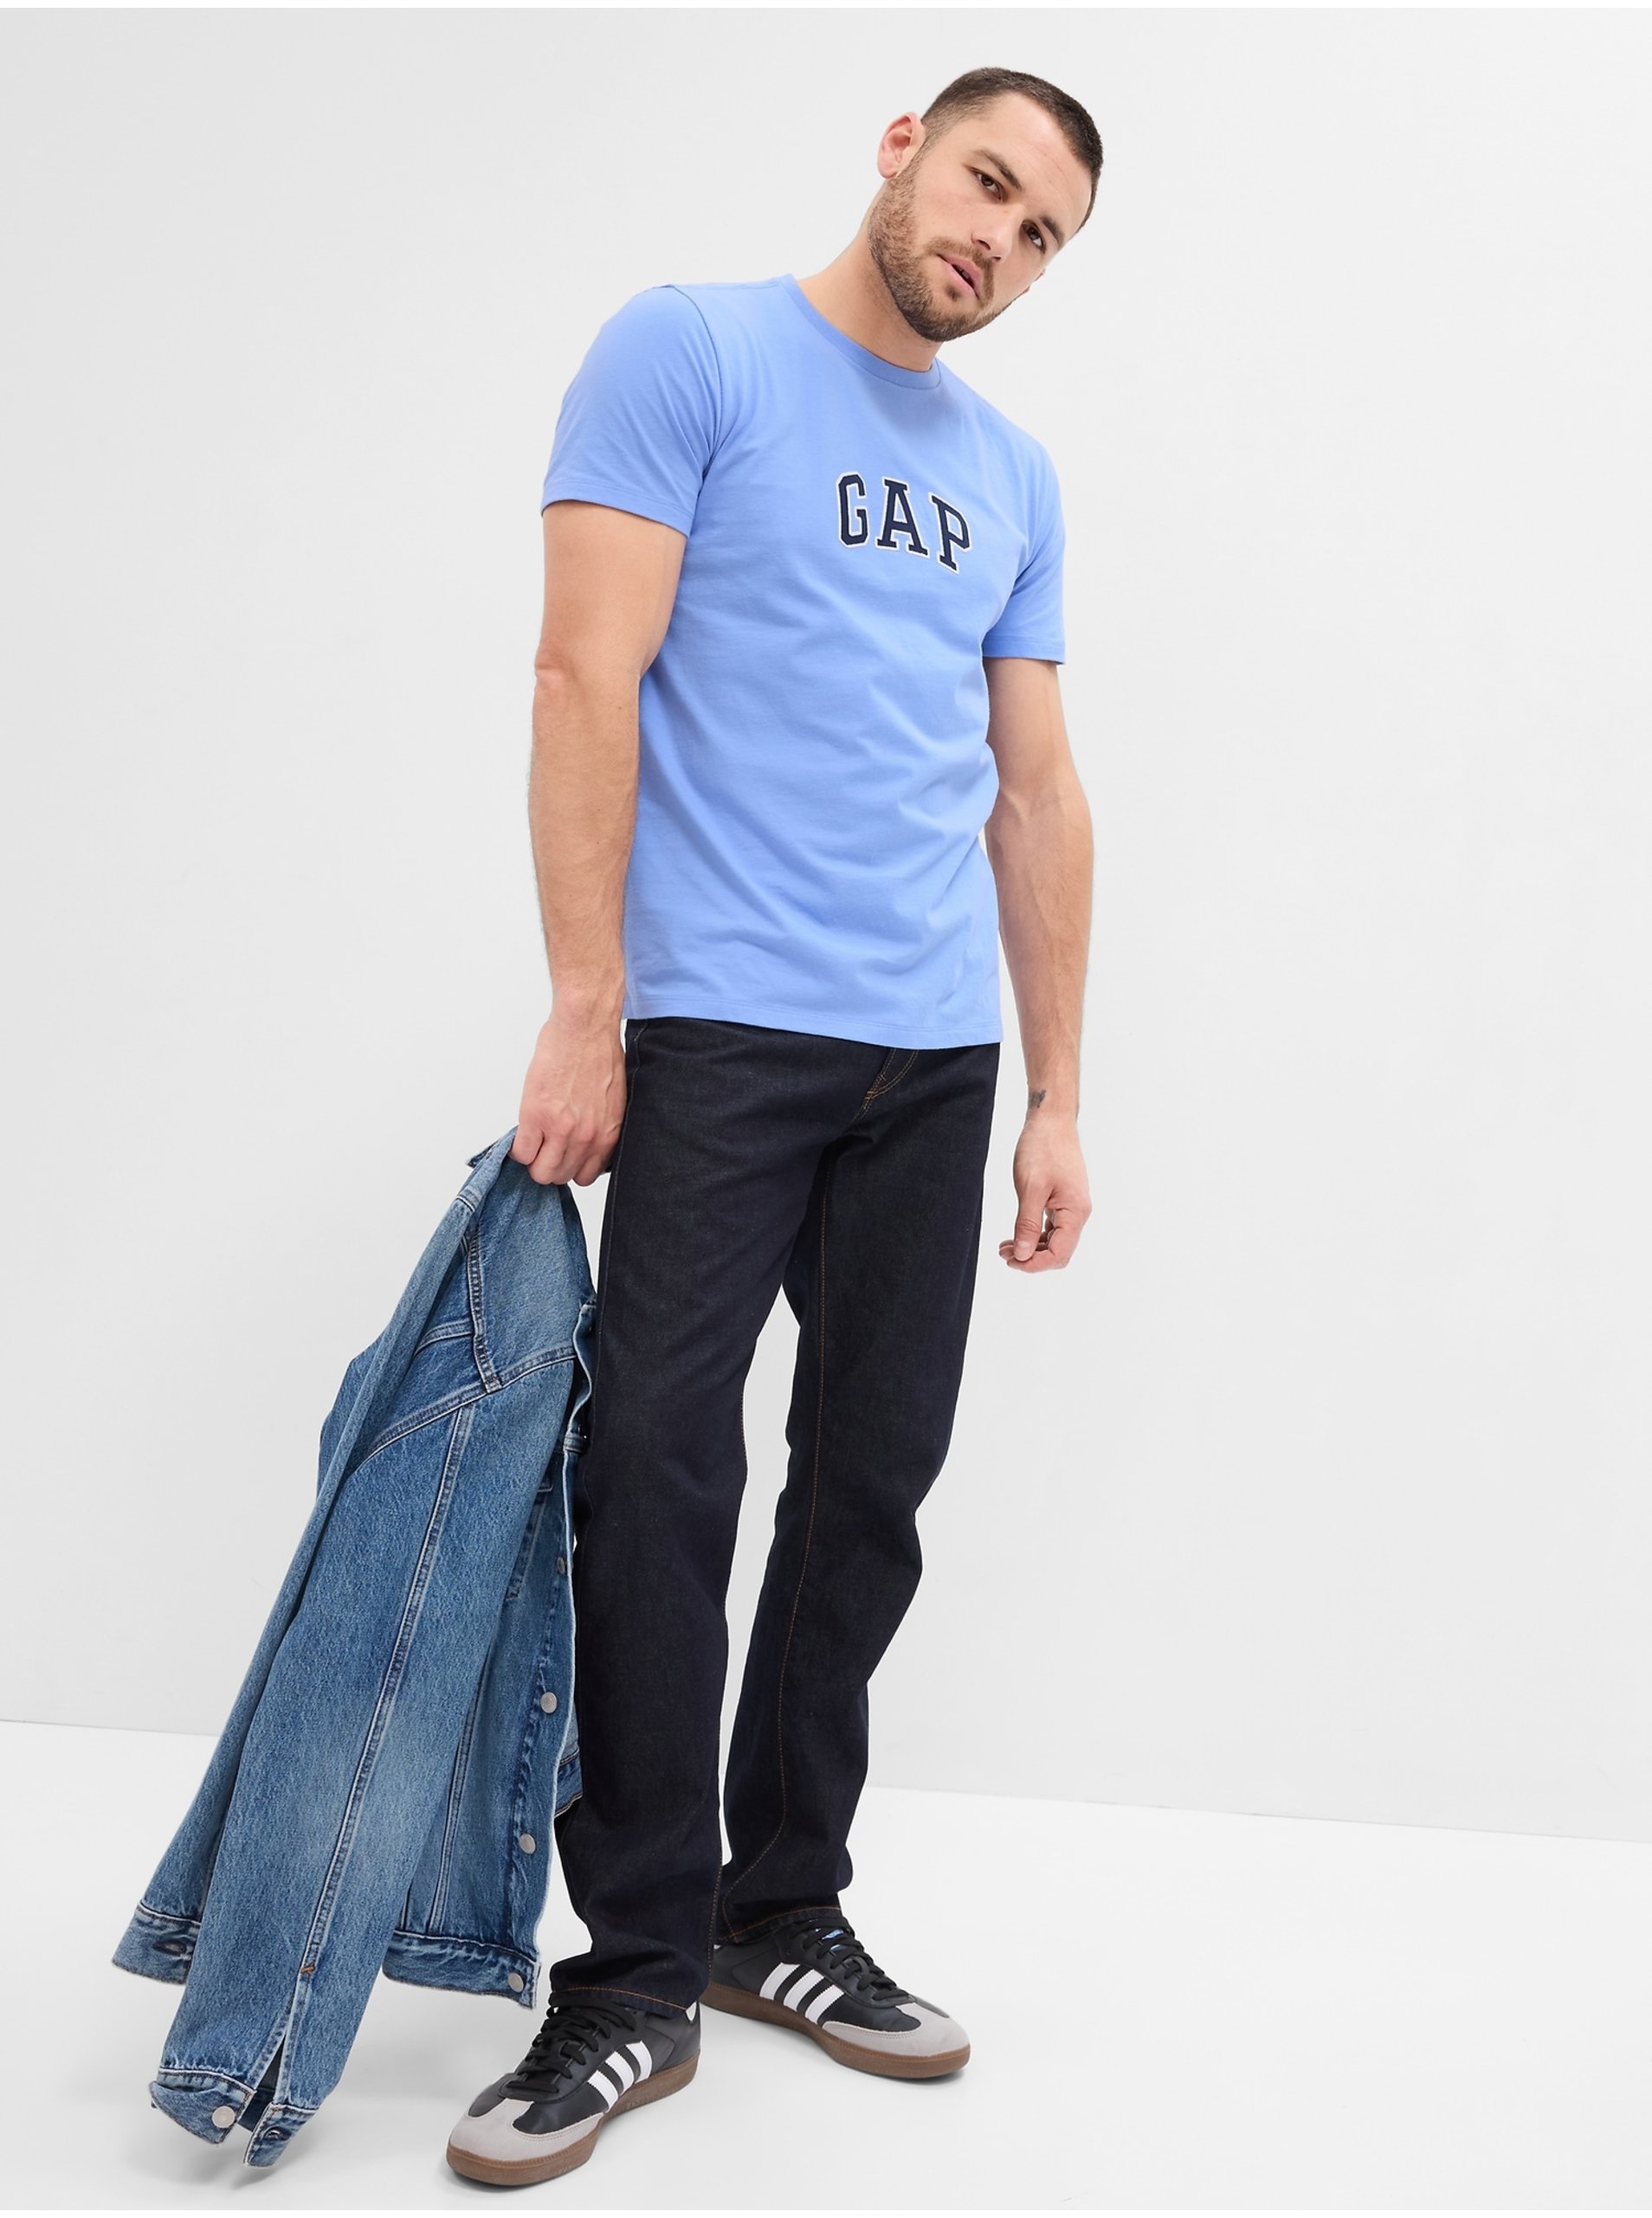 E-shop Modré pánské tričko s logem GAP